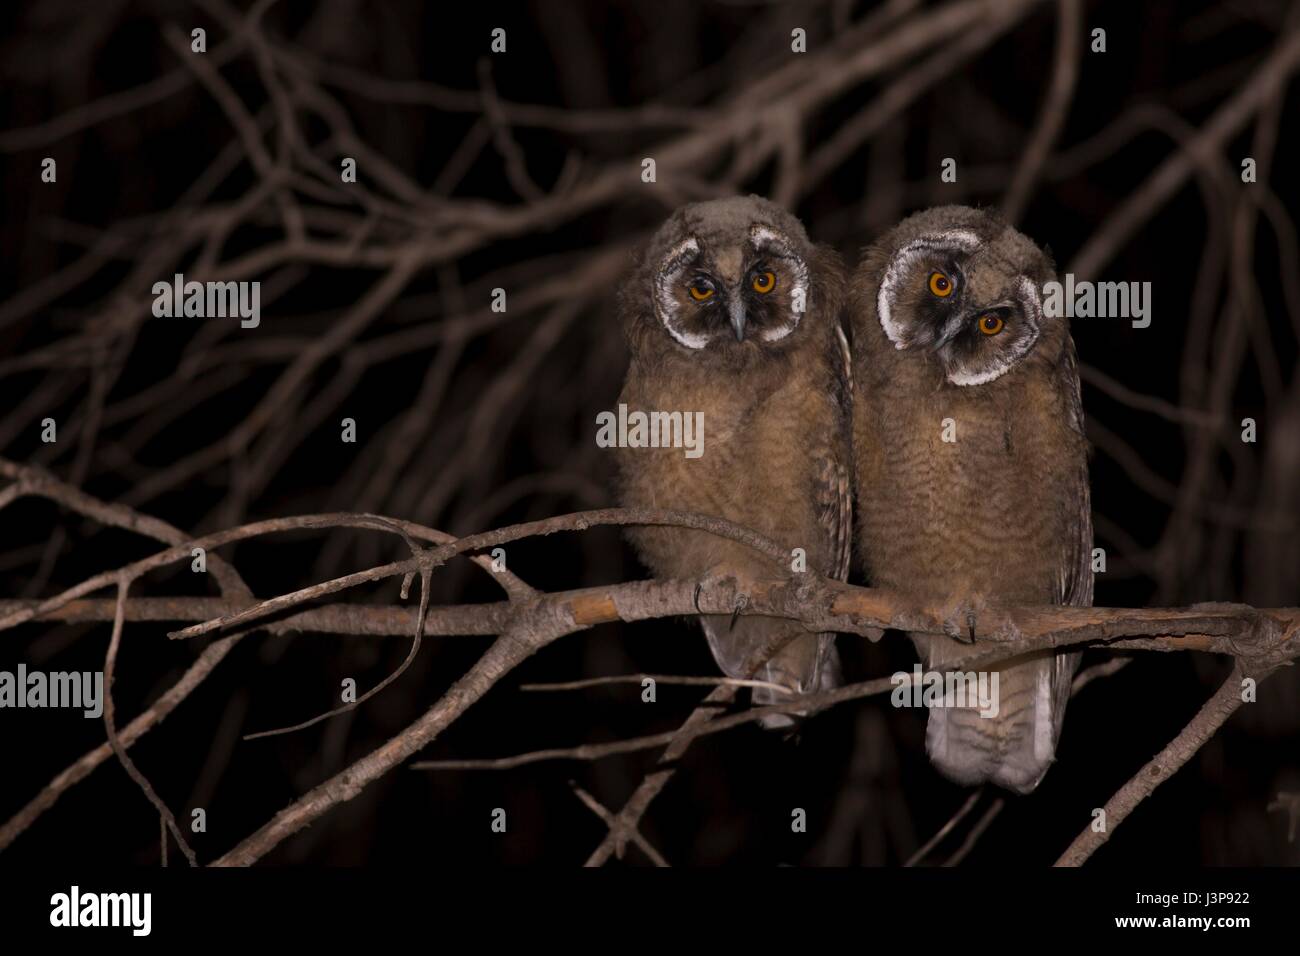 Long-eared Owls (Asio otus) in una struttura ad albero. Questo gufo abita bosco in prossimità di paese aperto tutto l'emisfero settentrionale. Essa è strettamente notturno e si nutre prevalentemente di piccoli mammiferi come topi e arvicole. Fotografato in Israele in aprile. Foto Stock